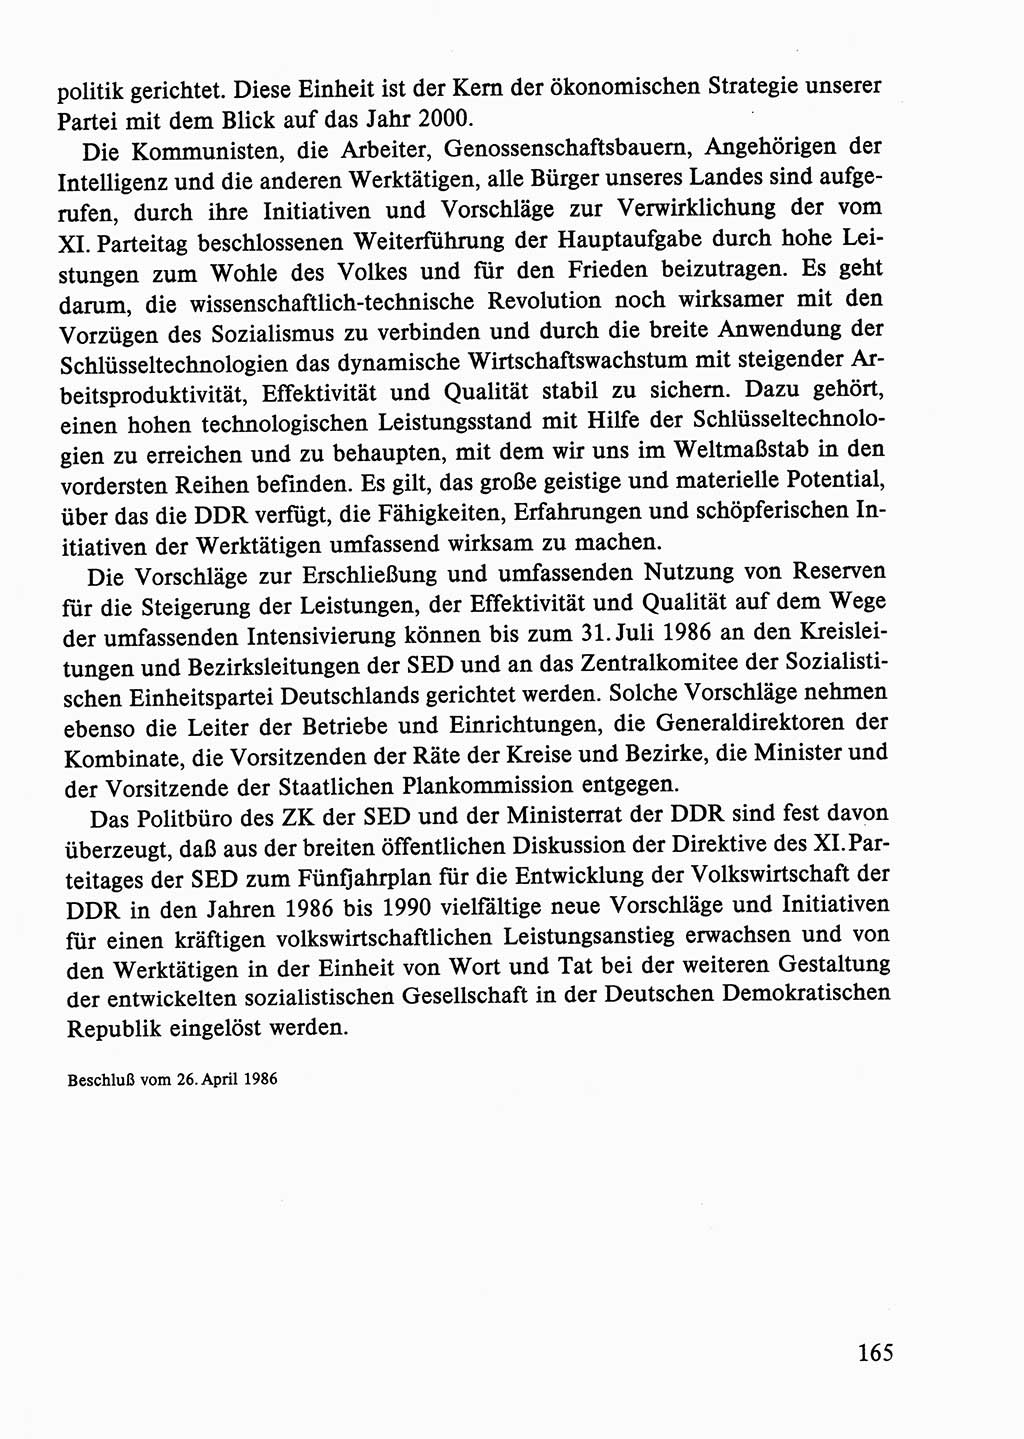 Dokumente der Sozialistischen Einheitspartei Deutschlands (SED) [Deutsche Demokratische Republik (DDR)] 1986-1987, Seite 165 (Dok. SED DDR 1986-1987, S. 165)